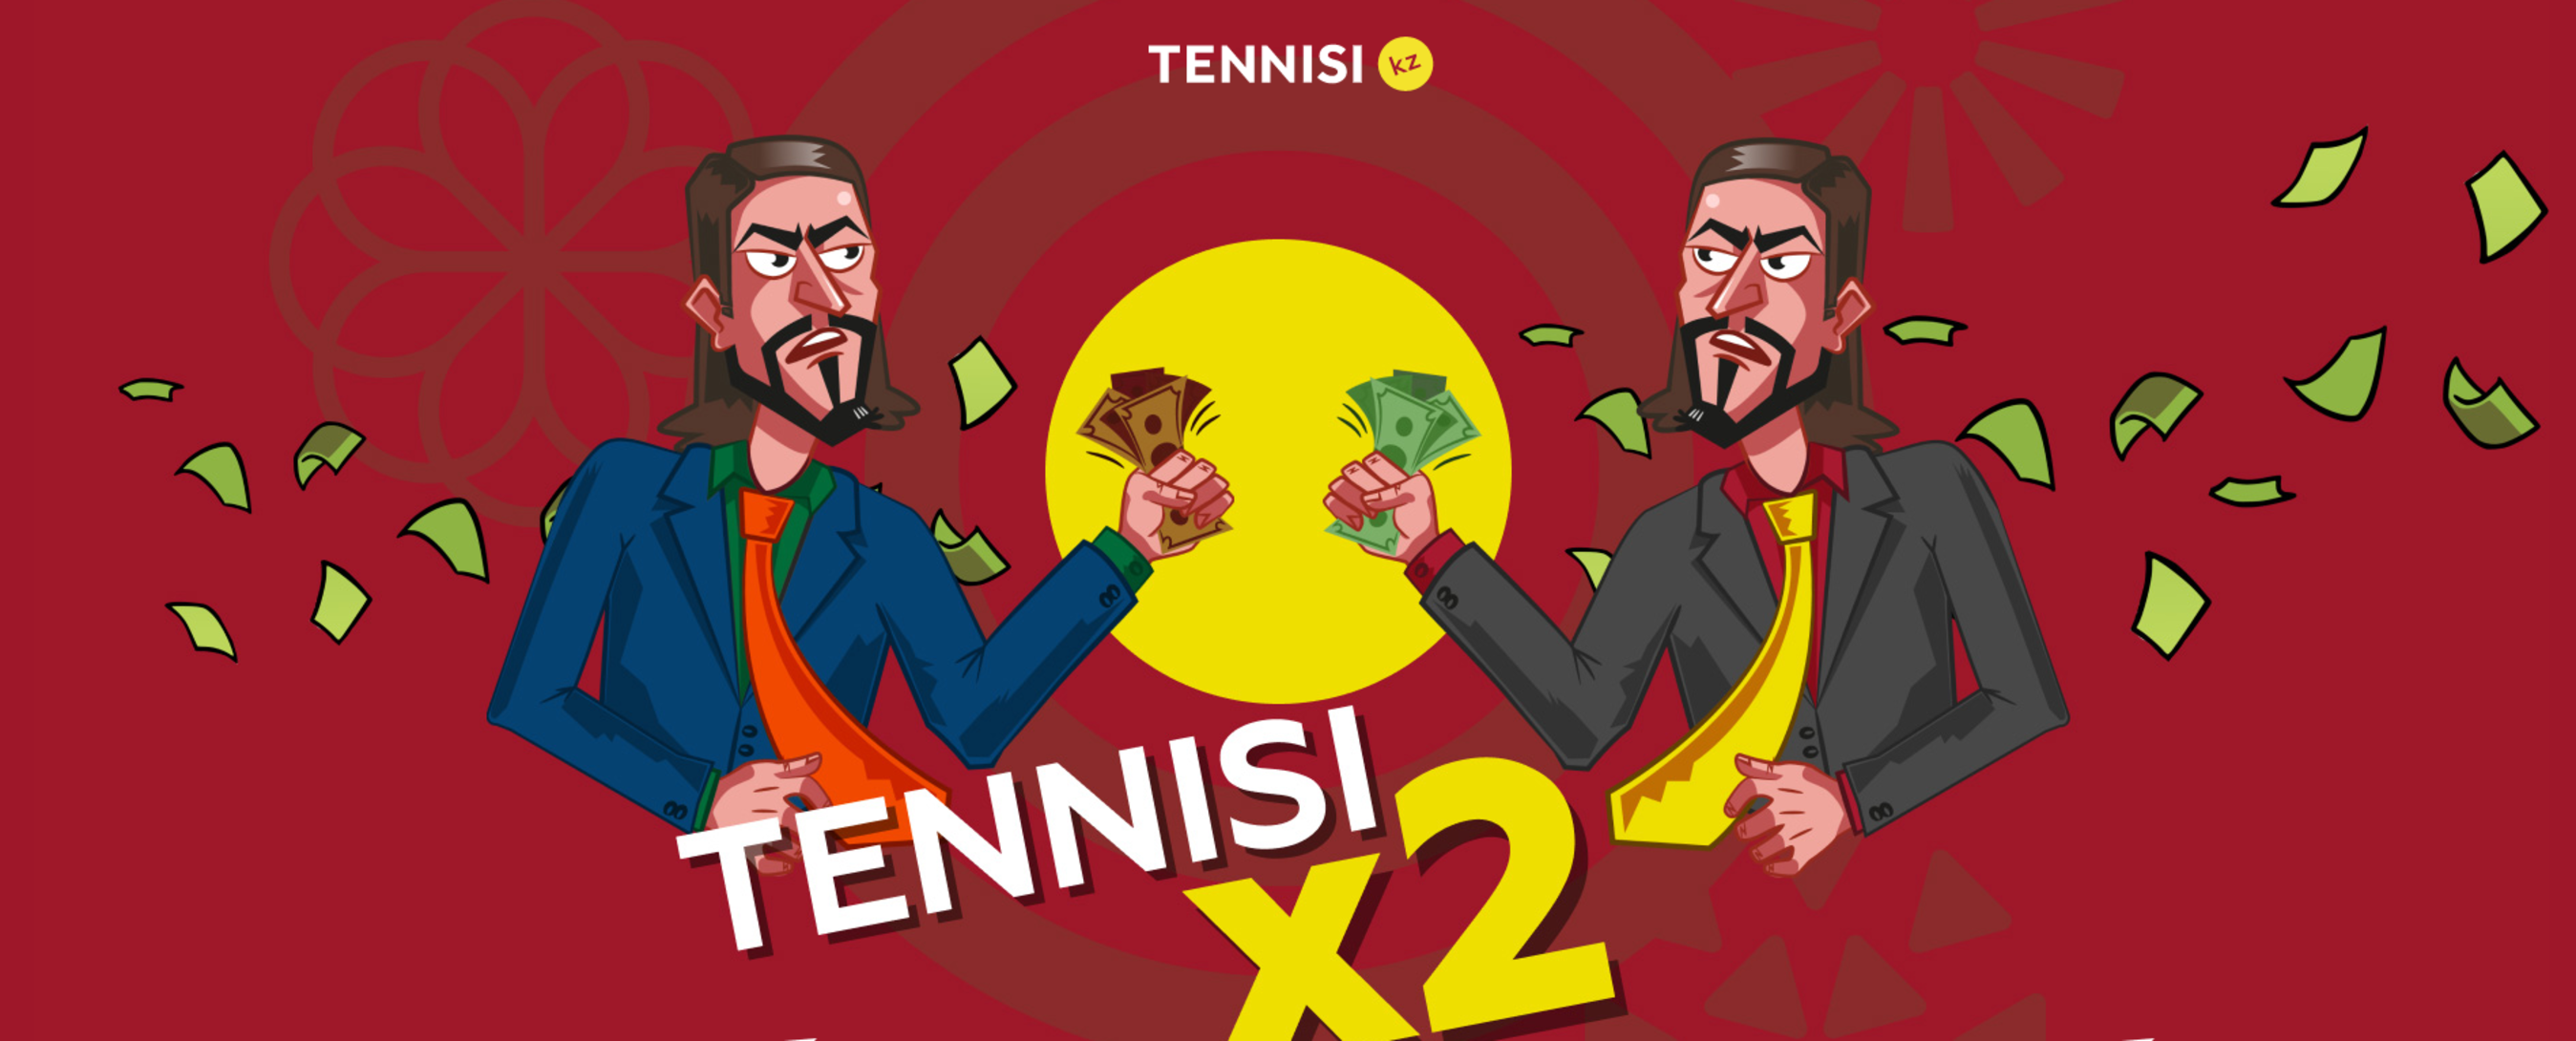 «Тенниси» в Казахстане дарит до 5000 тенге за депозит